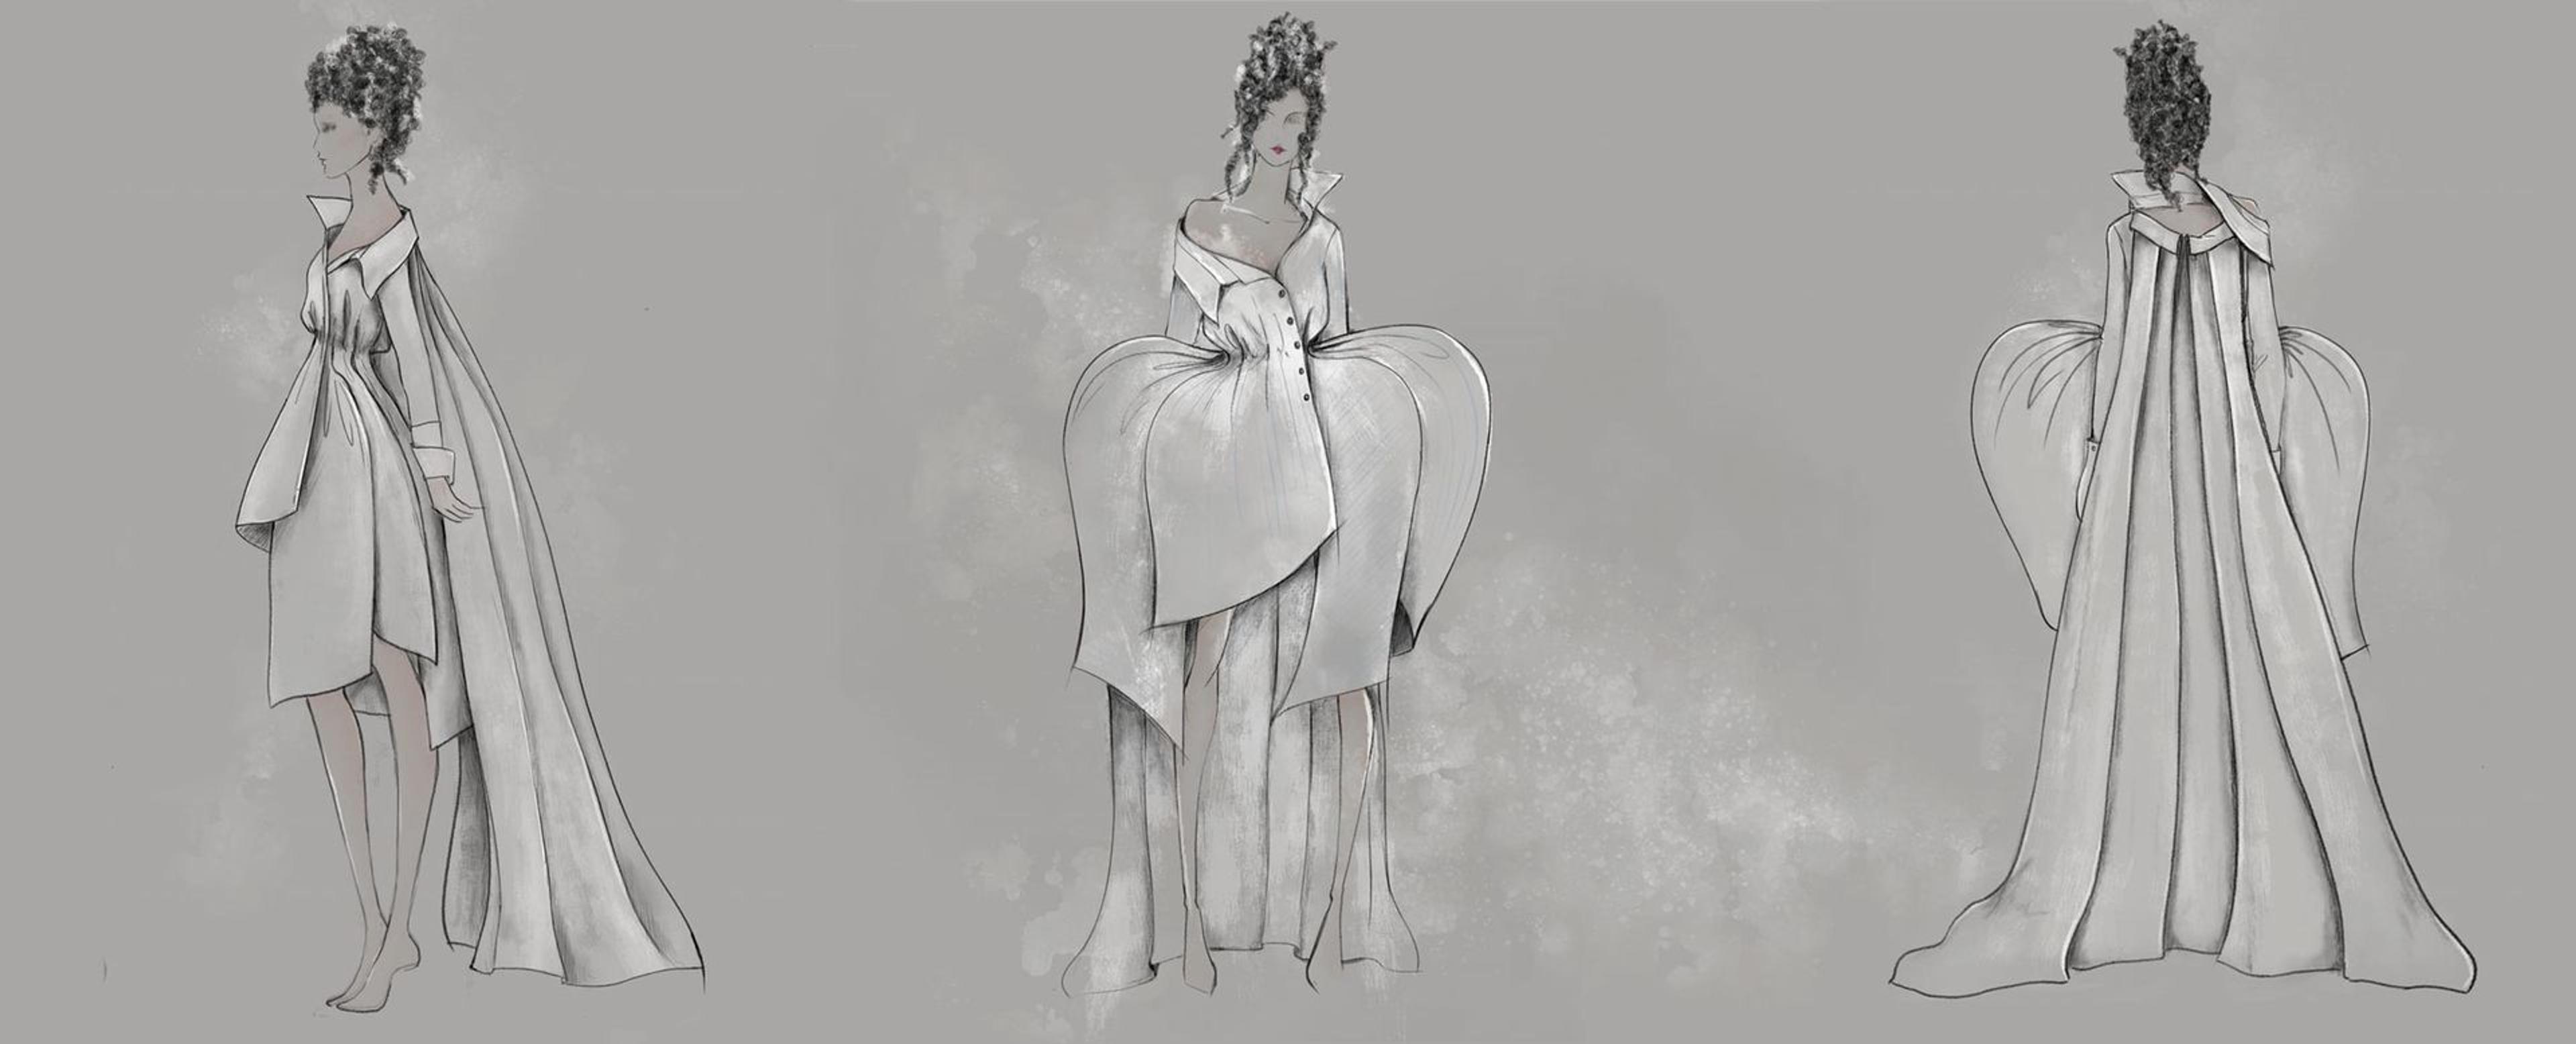 Three sketches of Maryam Almasi's winning dress design